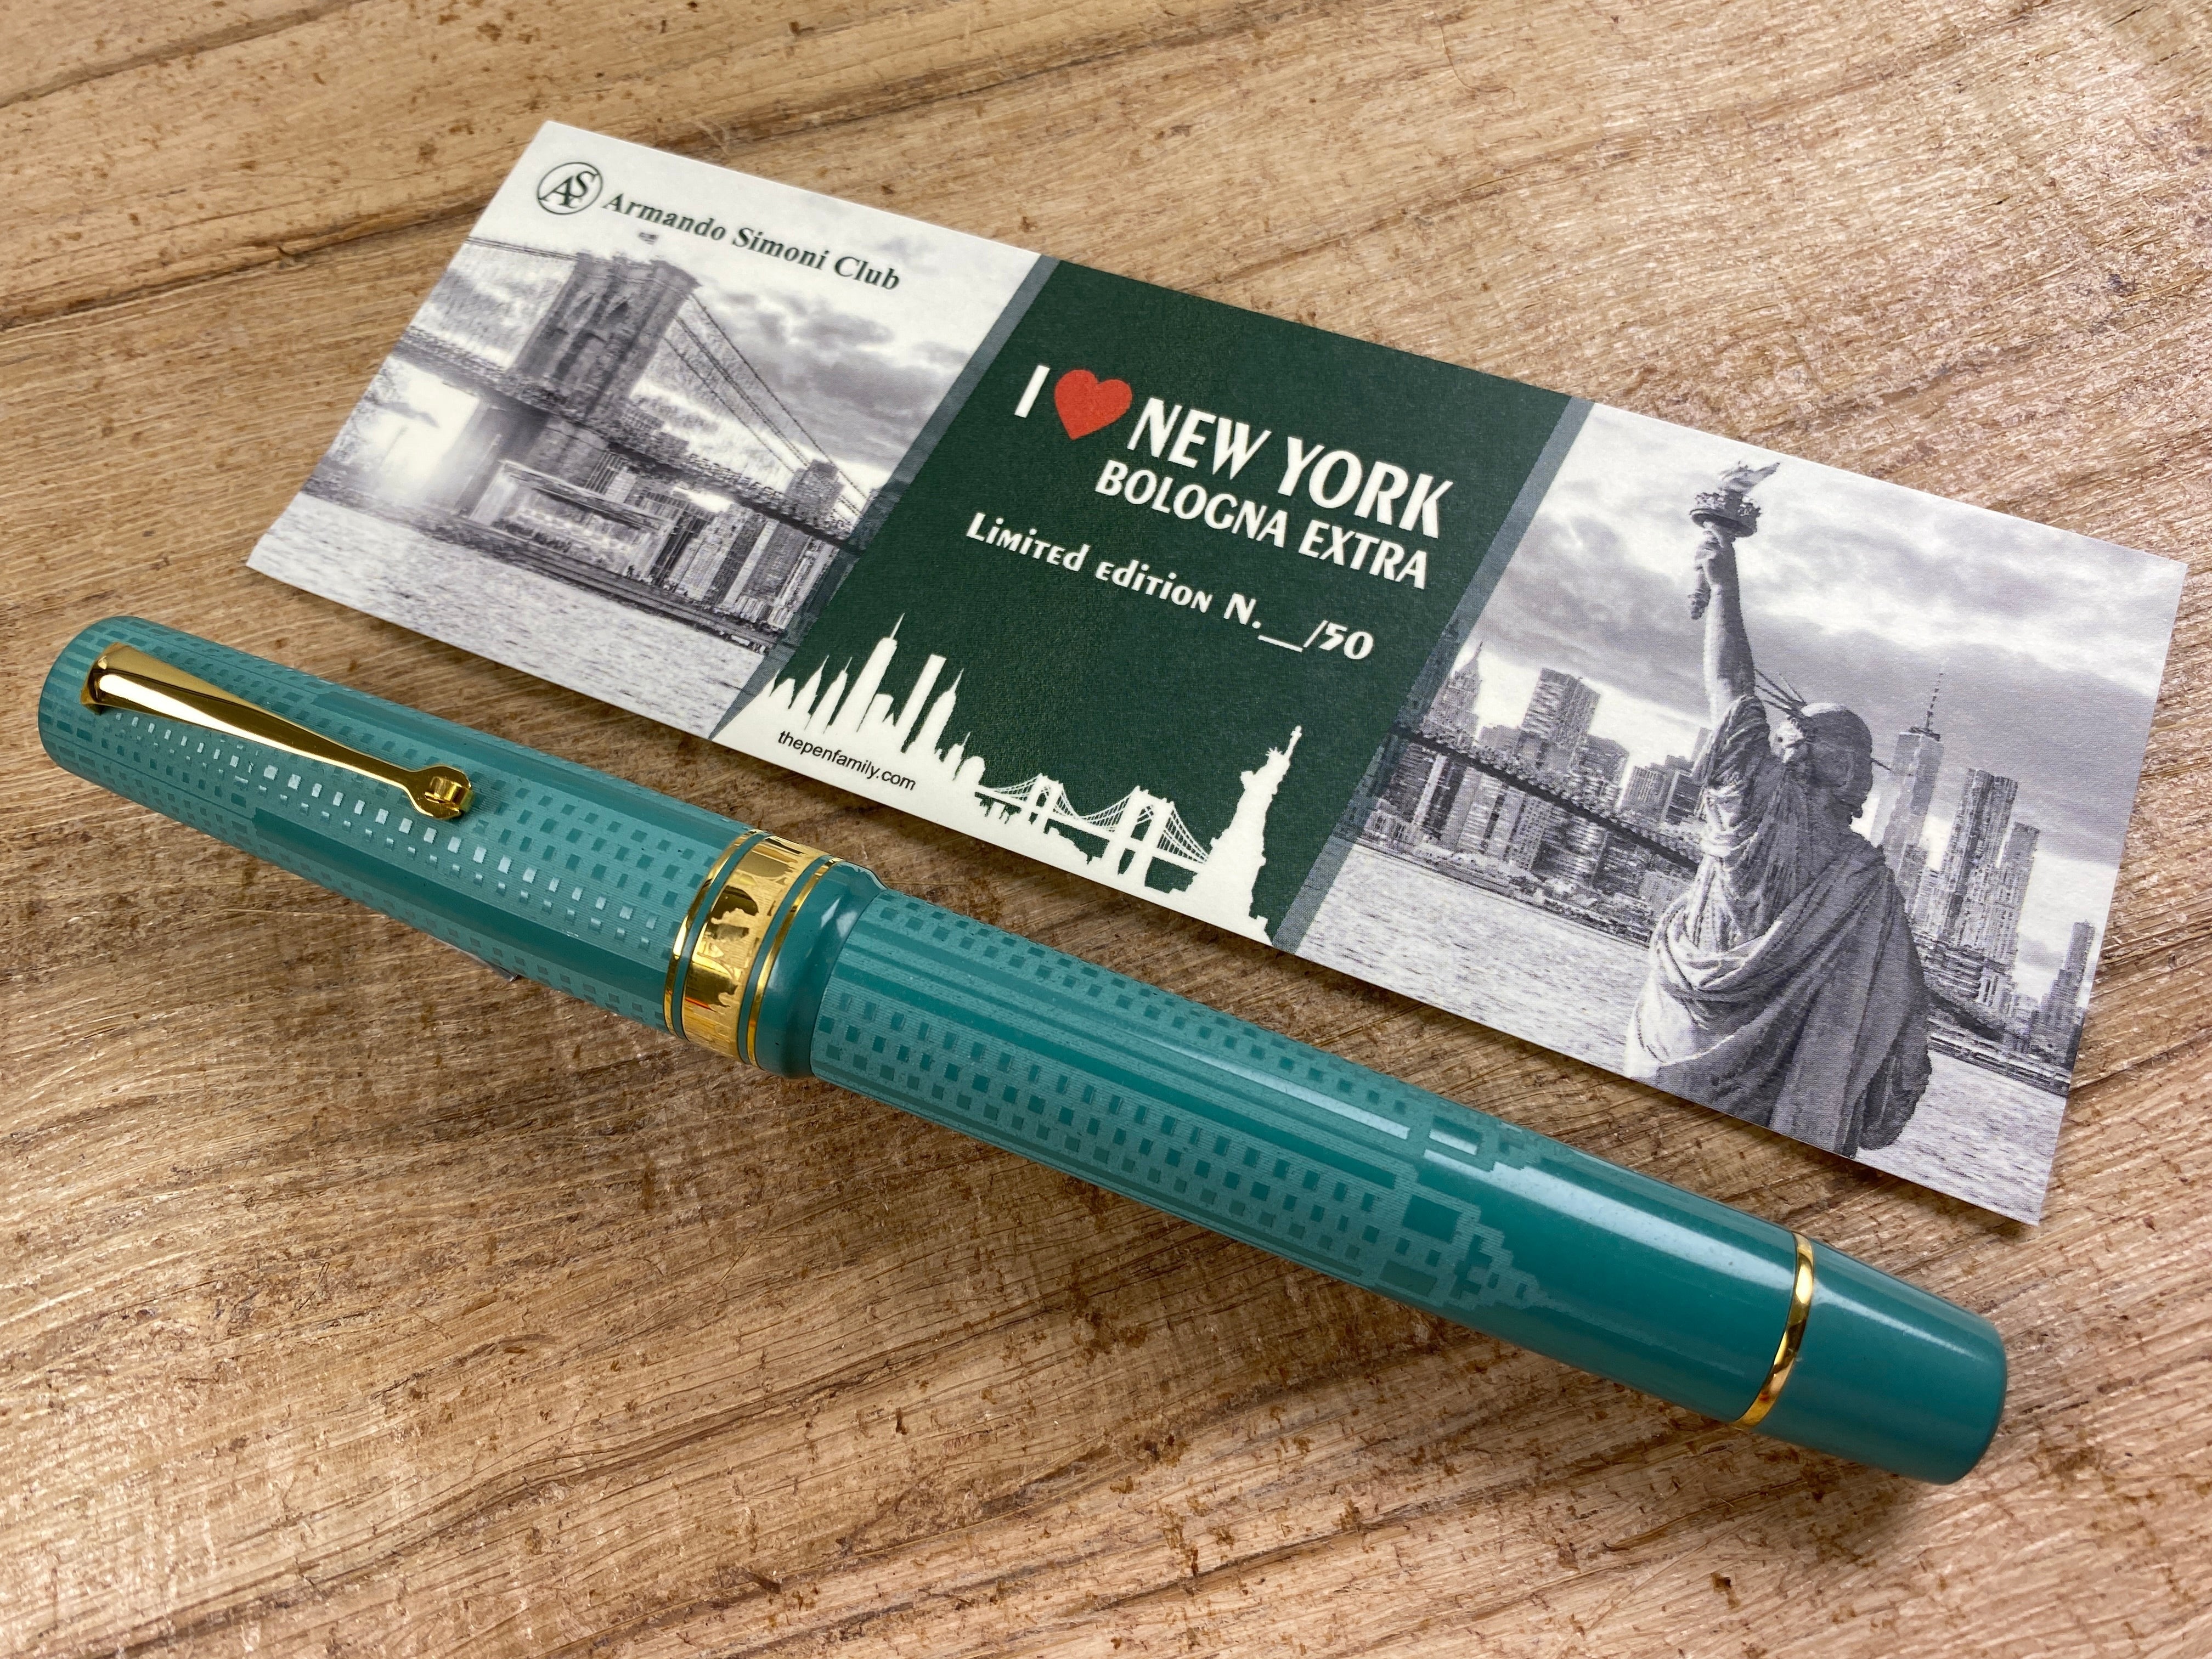 NEW! ASC Bologna Extra "I LOVE NY" Empire State Building Chased - Green Ebonite